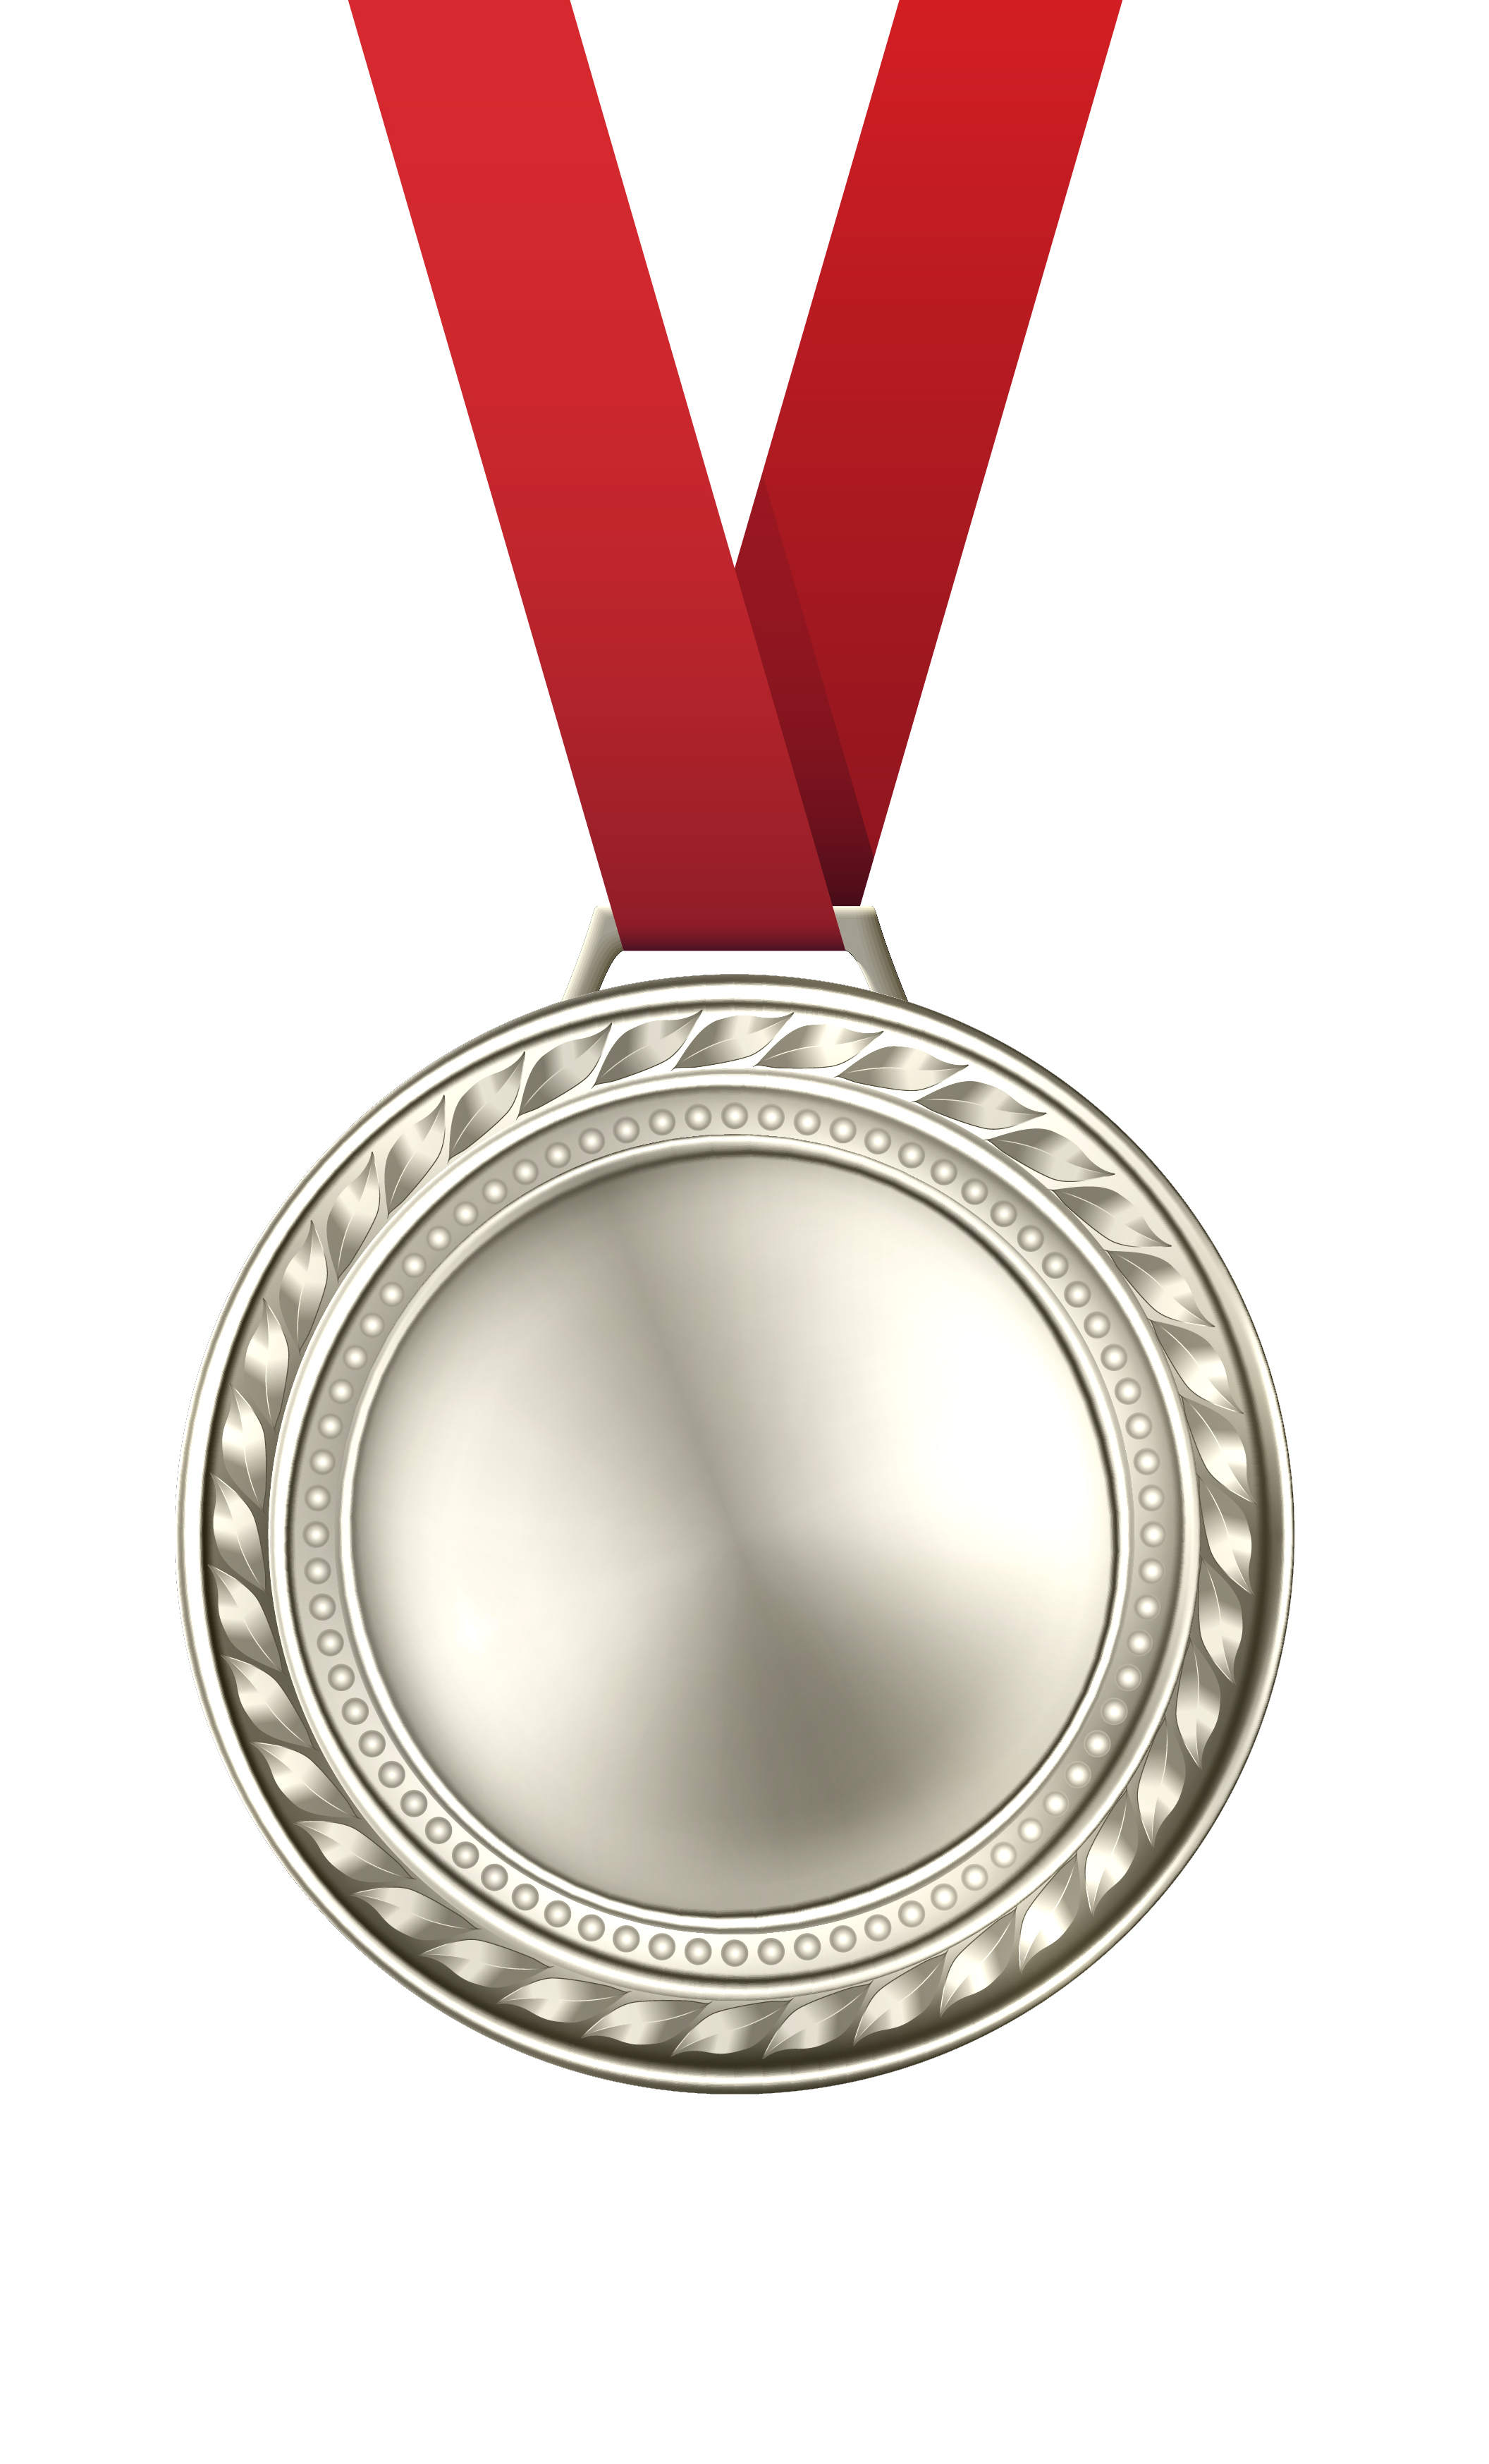 Silver Award for 200 Flights